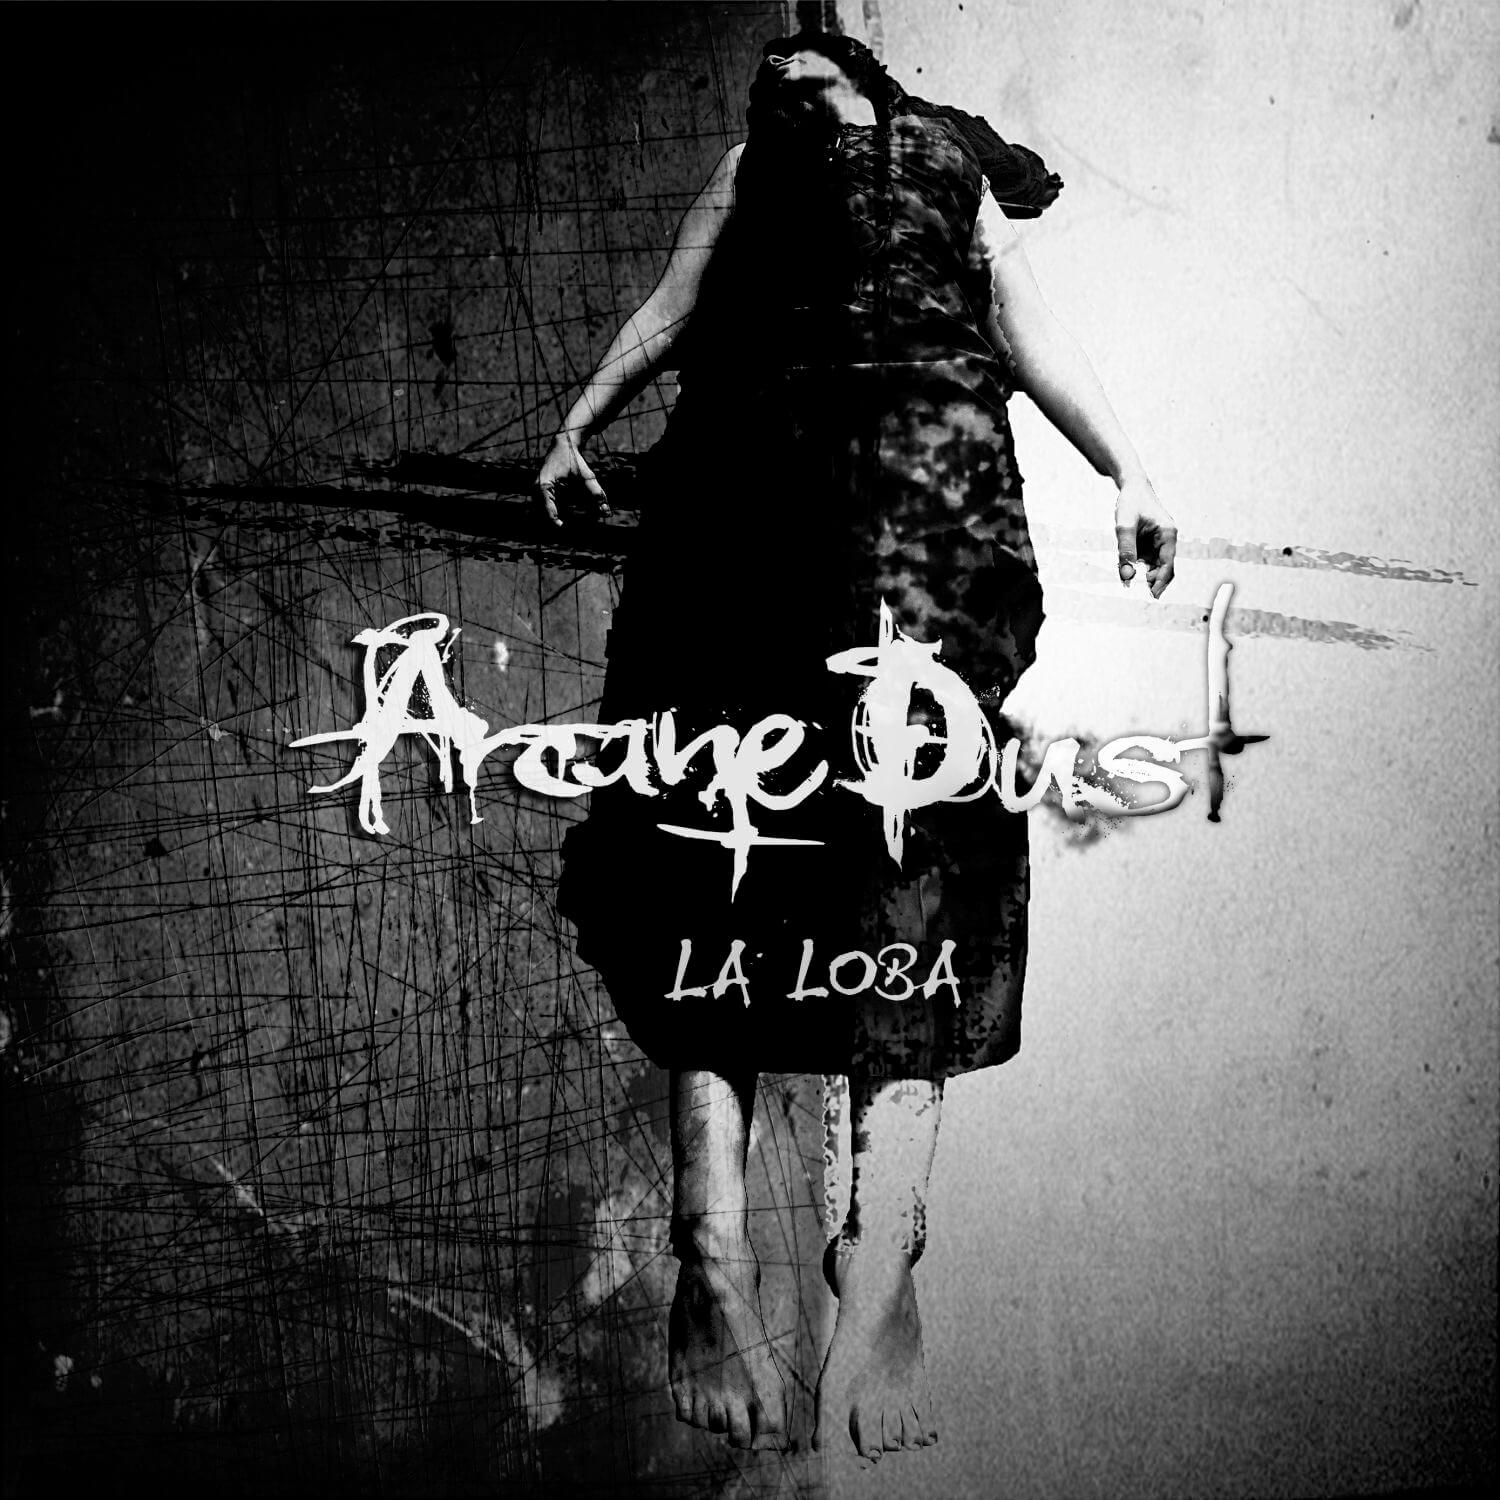 Arcane Dust “La Loba” wznowienie już w sprzedaży!